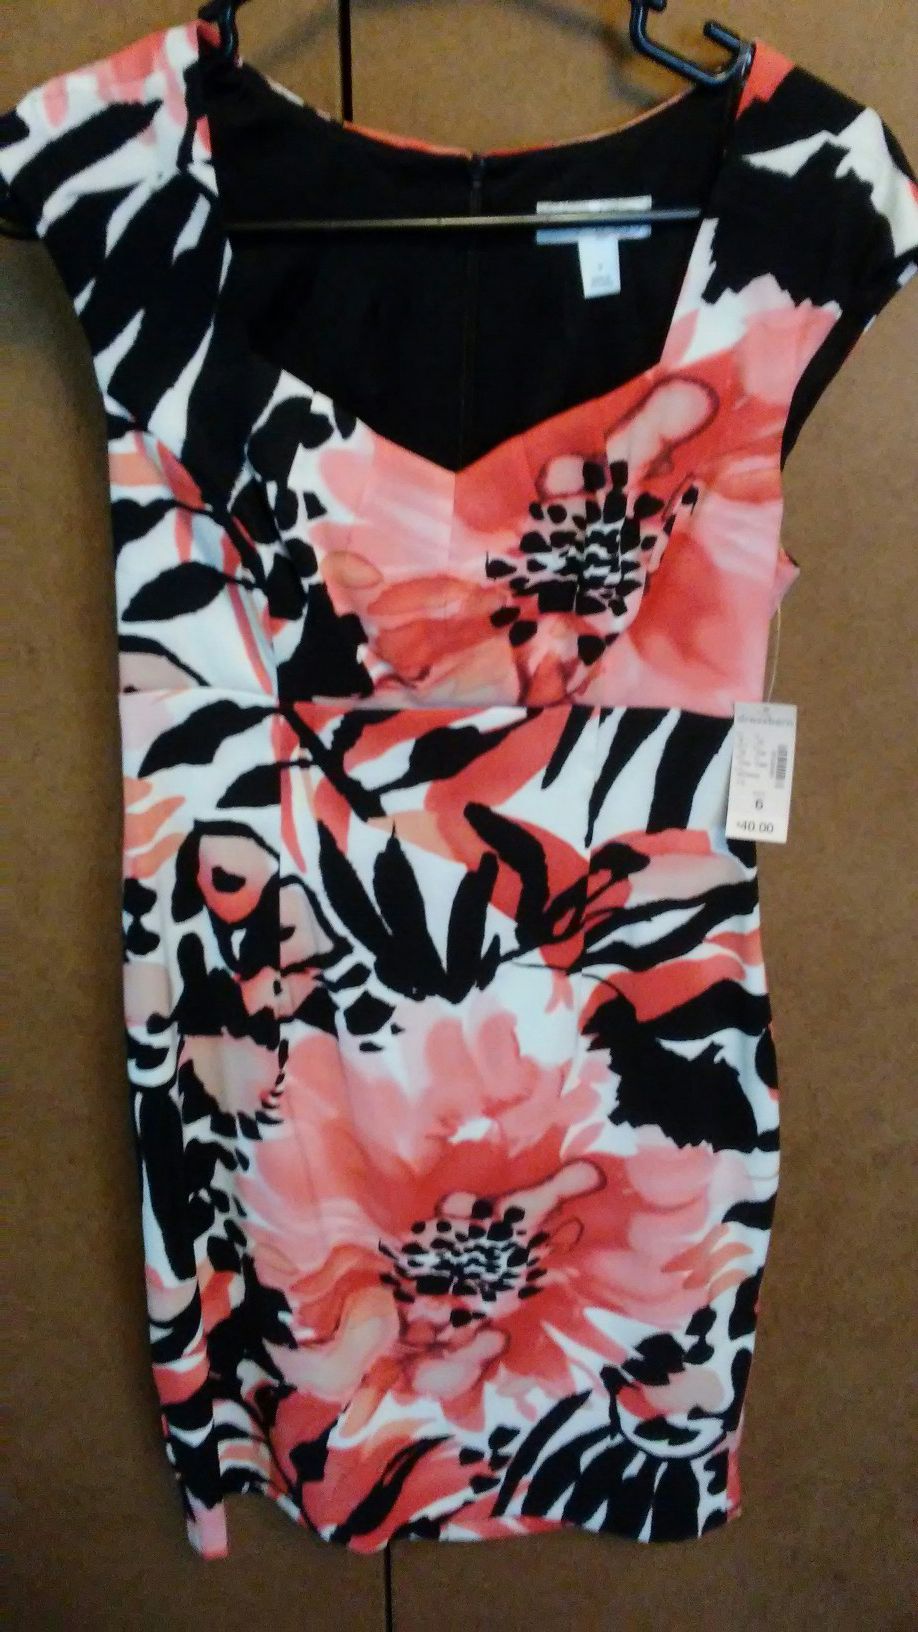 (New)Dress Barn Floral pattern Sz26 $30